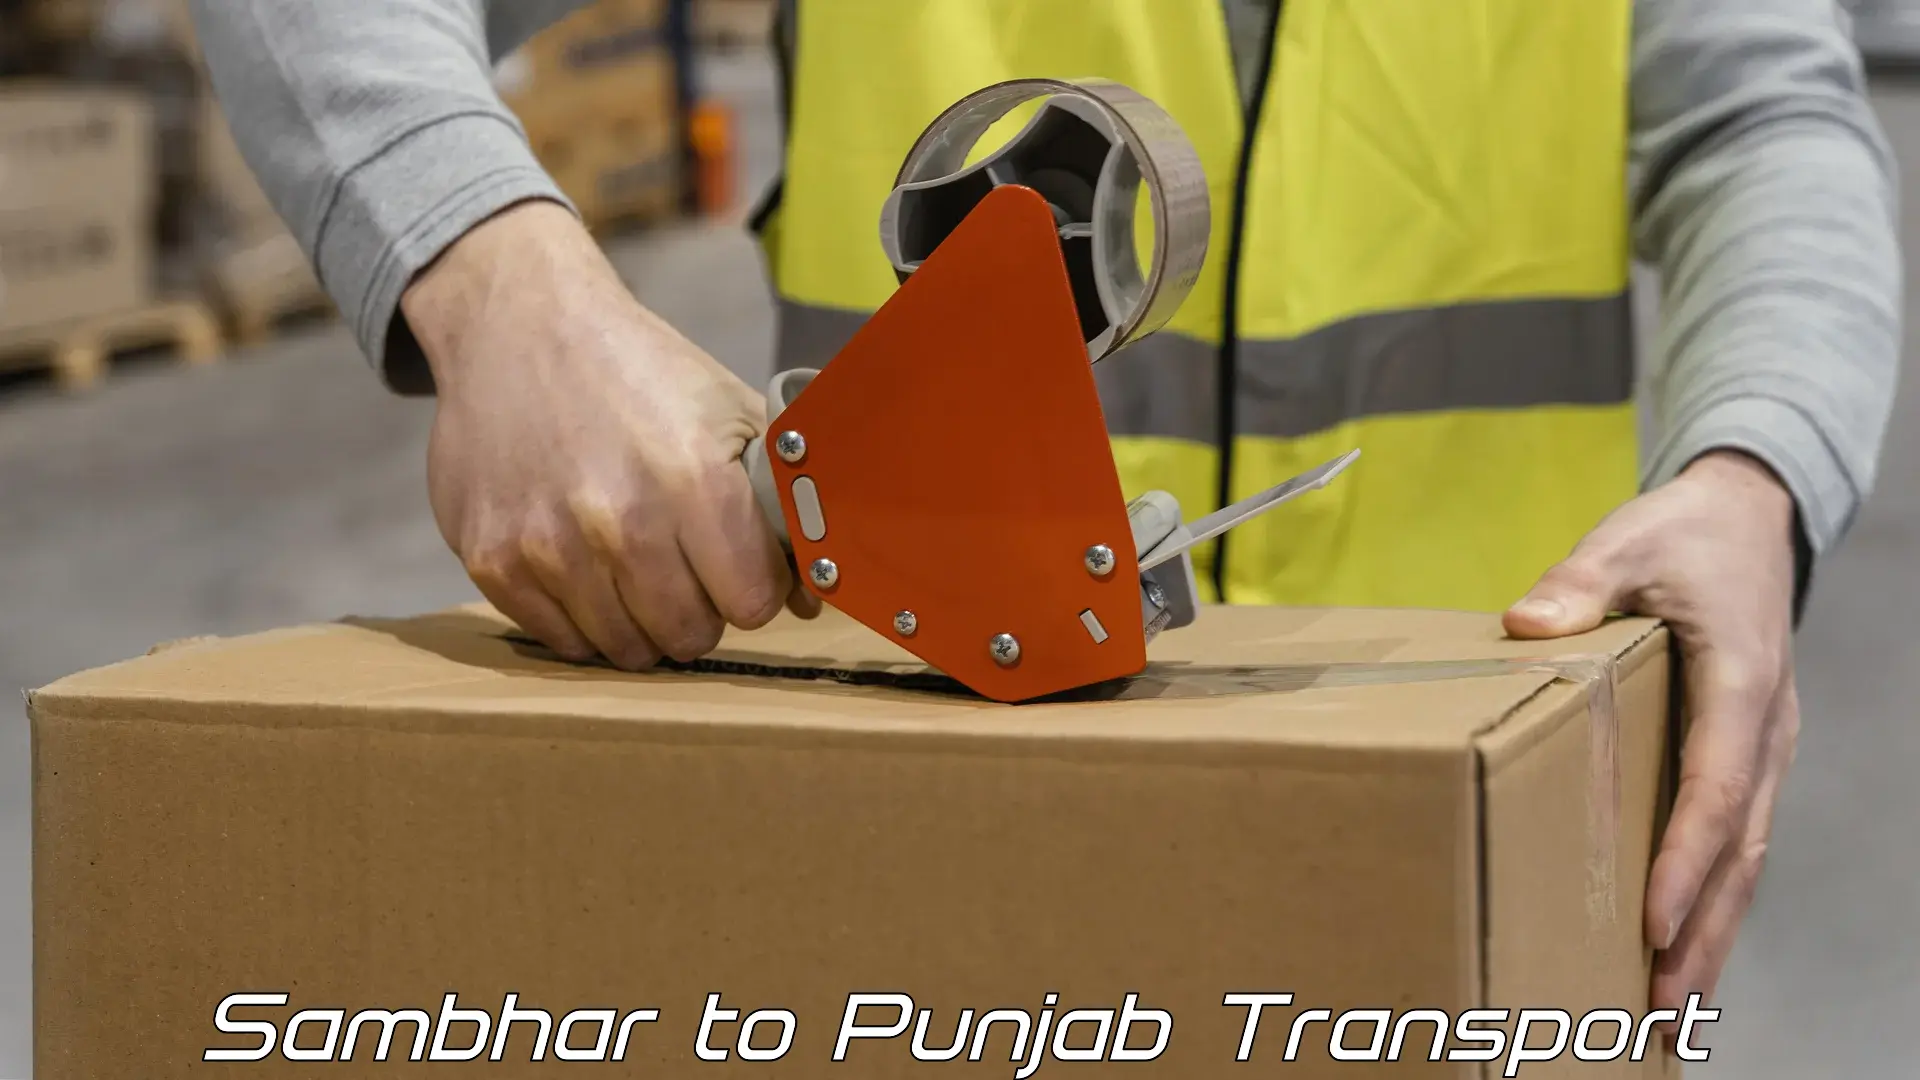 Road transport online services Sambhar to Punjab